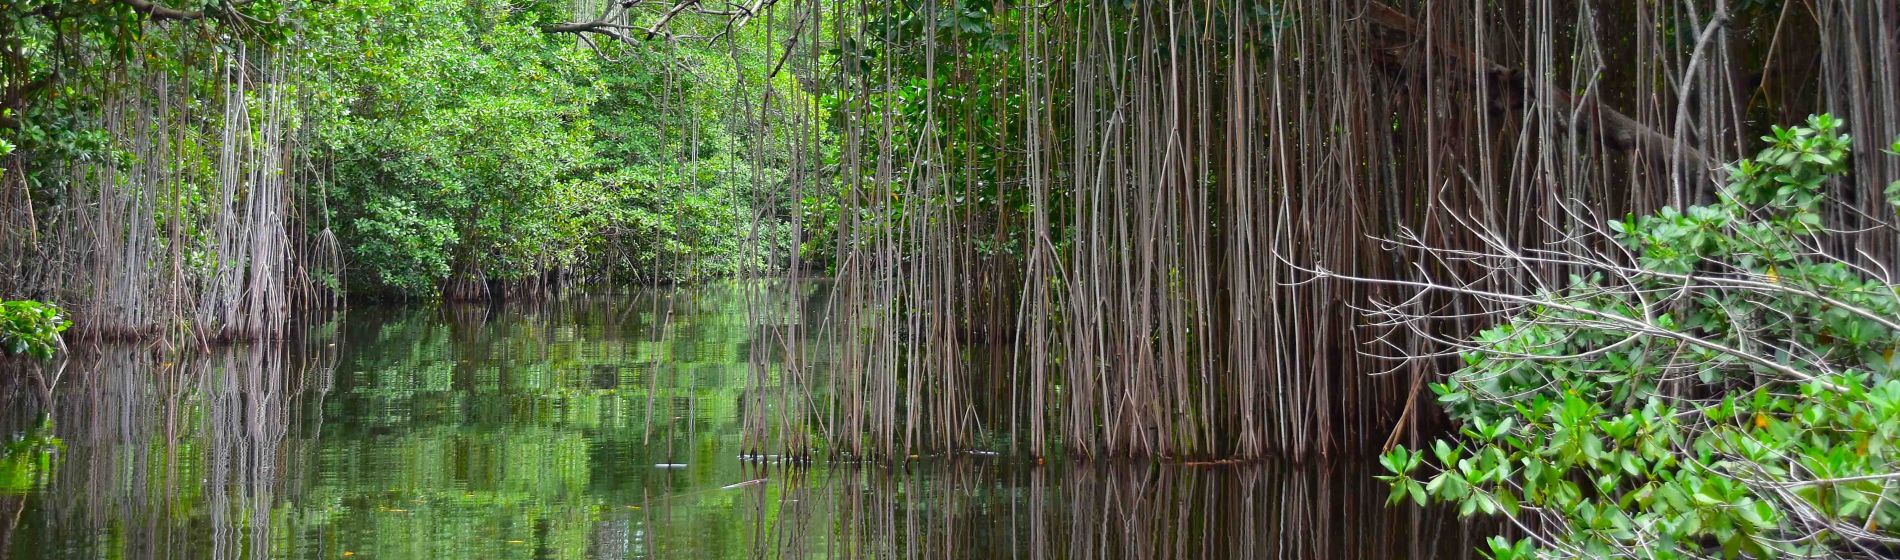 mangroves_black_river_jamaica.jpg